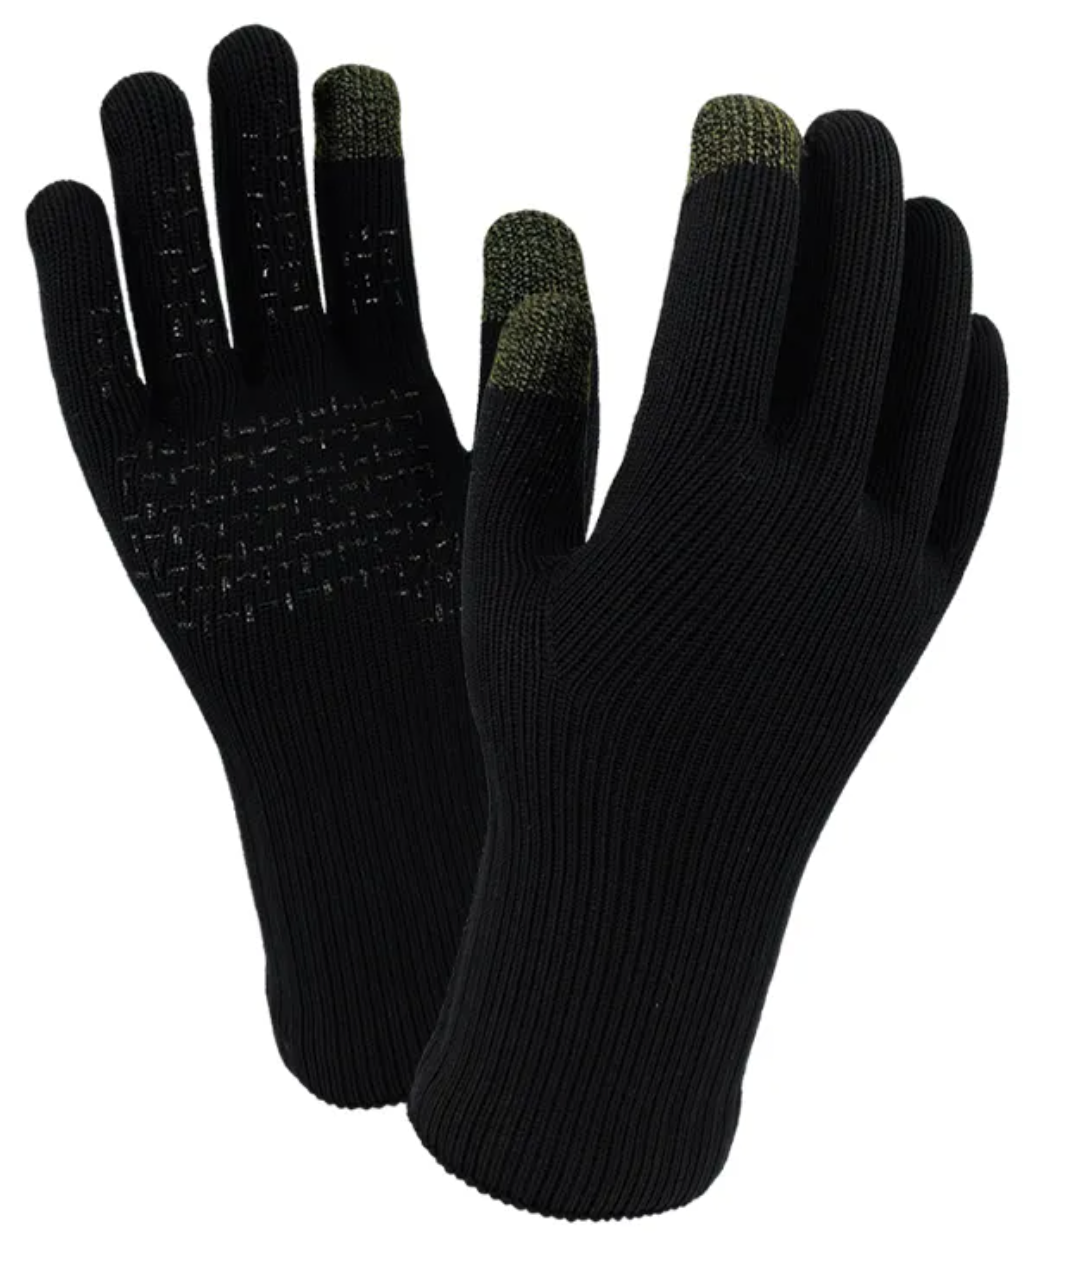 DexShell Waterproof Thermfit Merino Wool Gloves